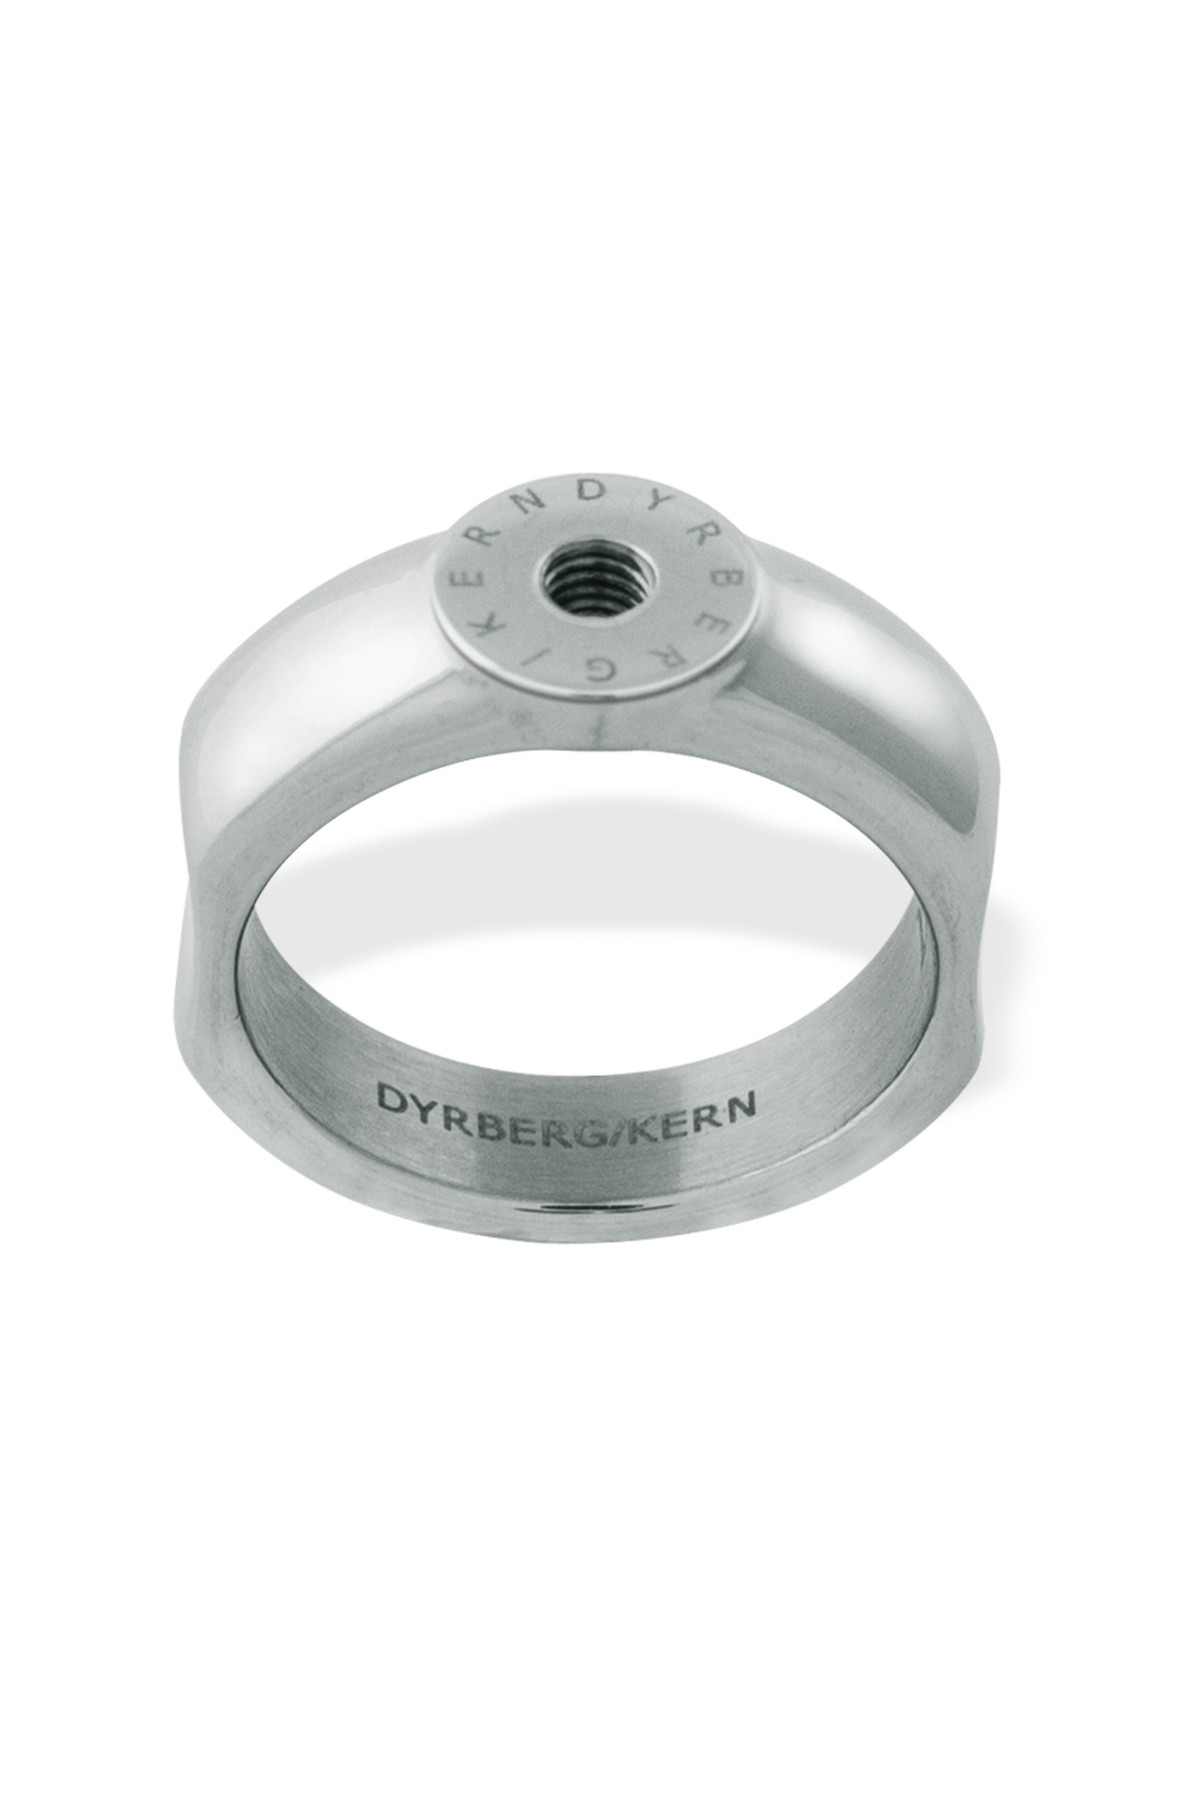 Billede af Dyrberg/kern Ring Ring, Farve: Sølv, Størrelse: IIIII/63, Dame